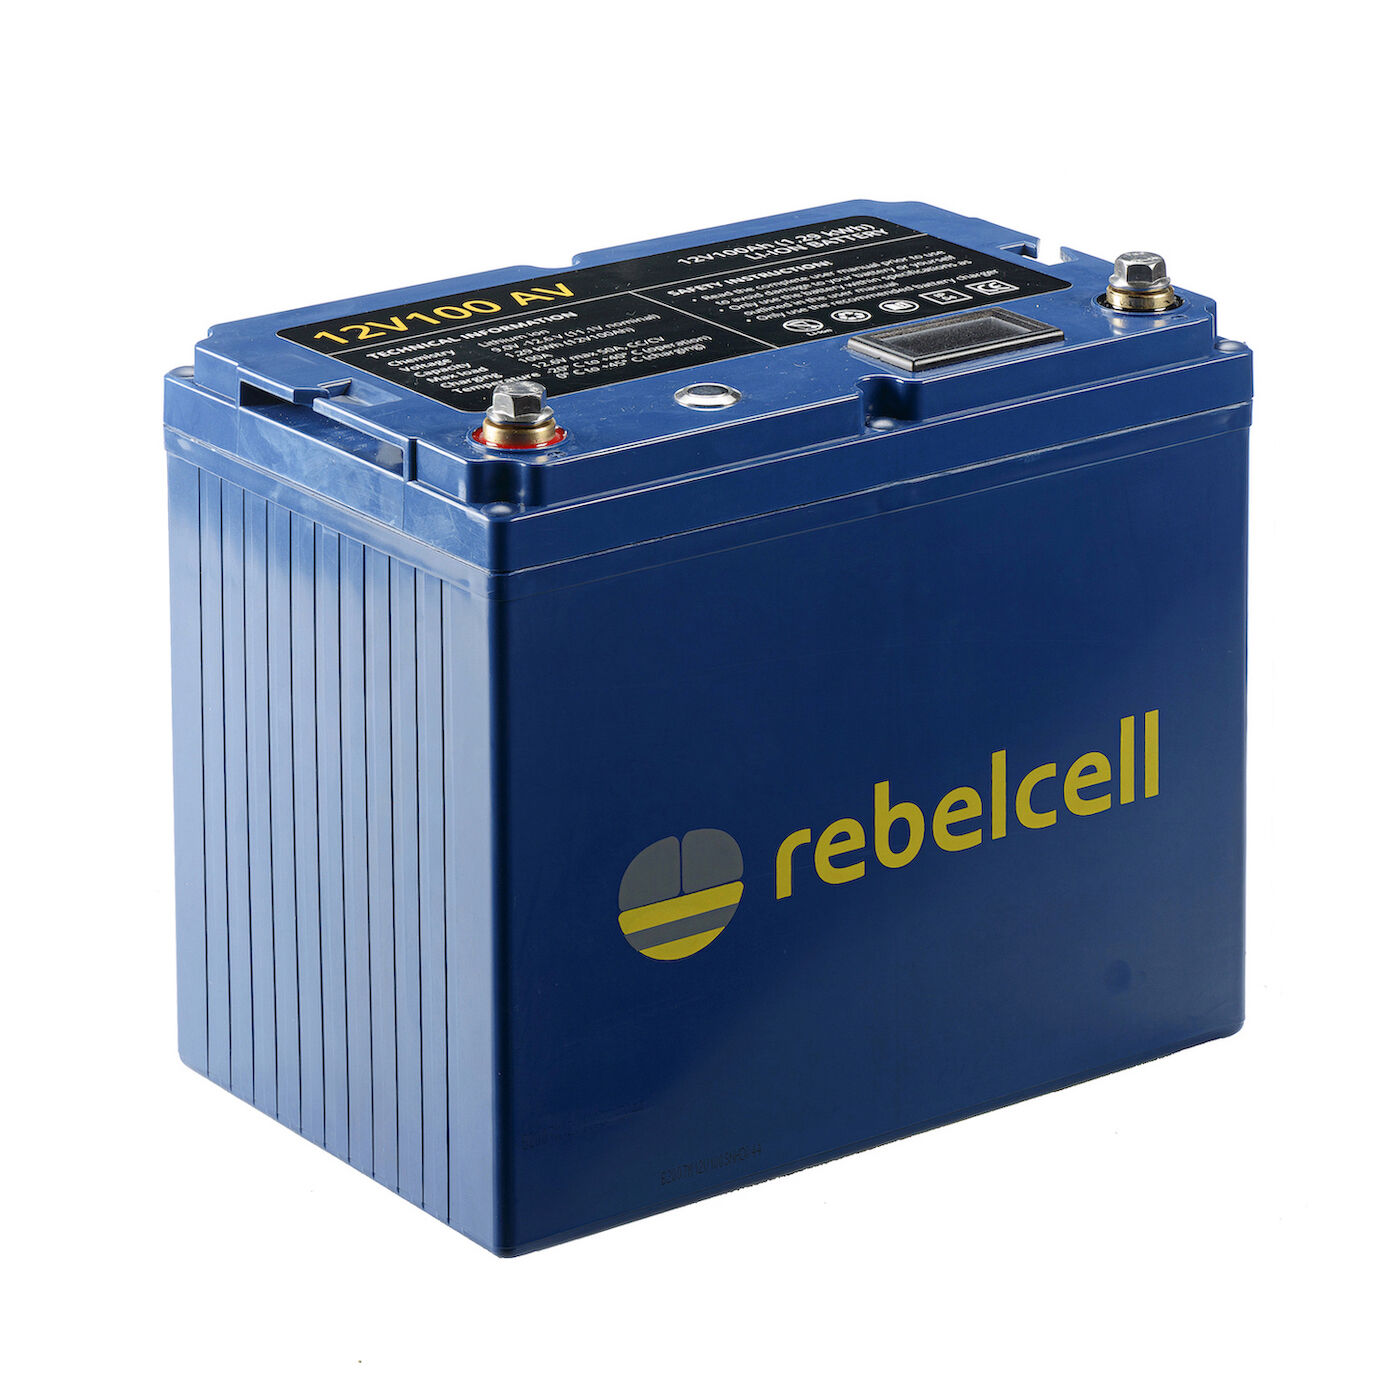 RebelCell 12V100 AV Lithium Batterie (12V 100Ah) 1,29kWh